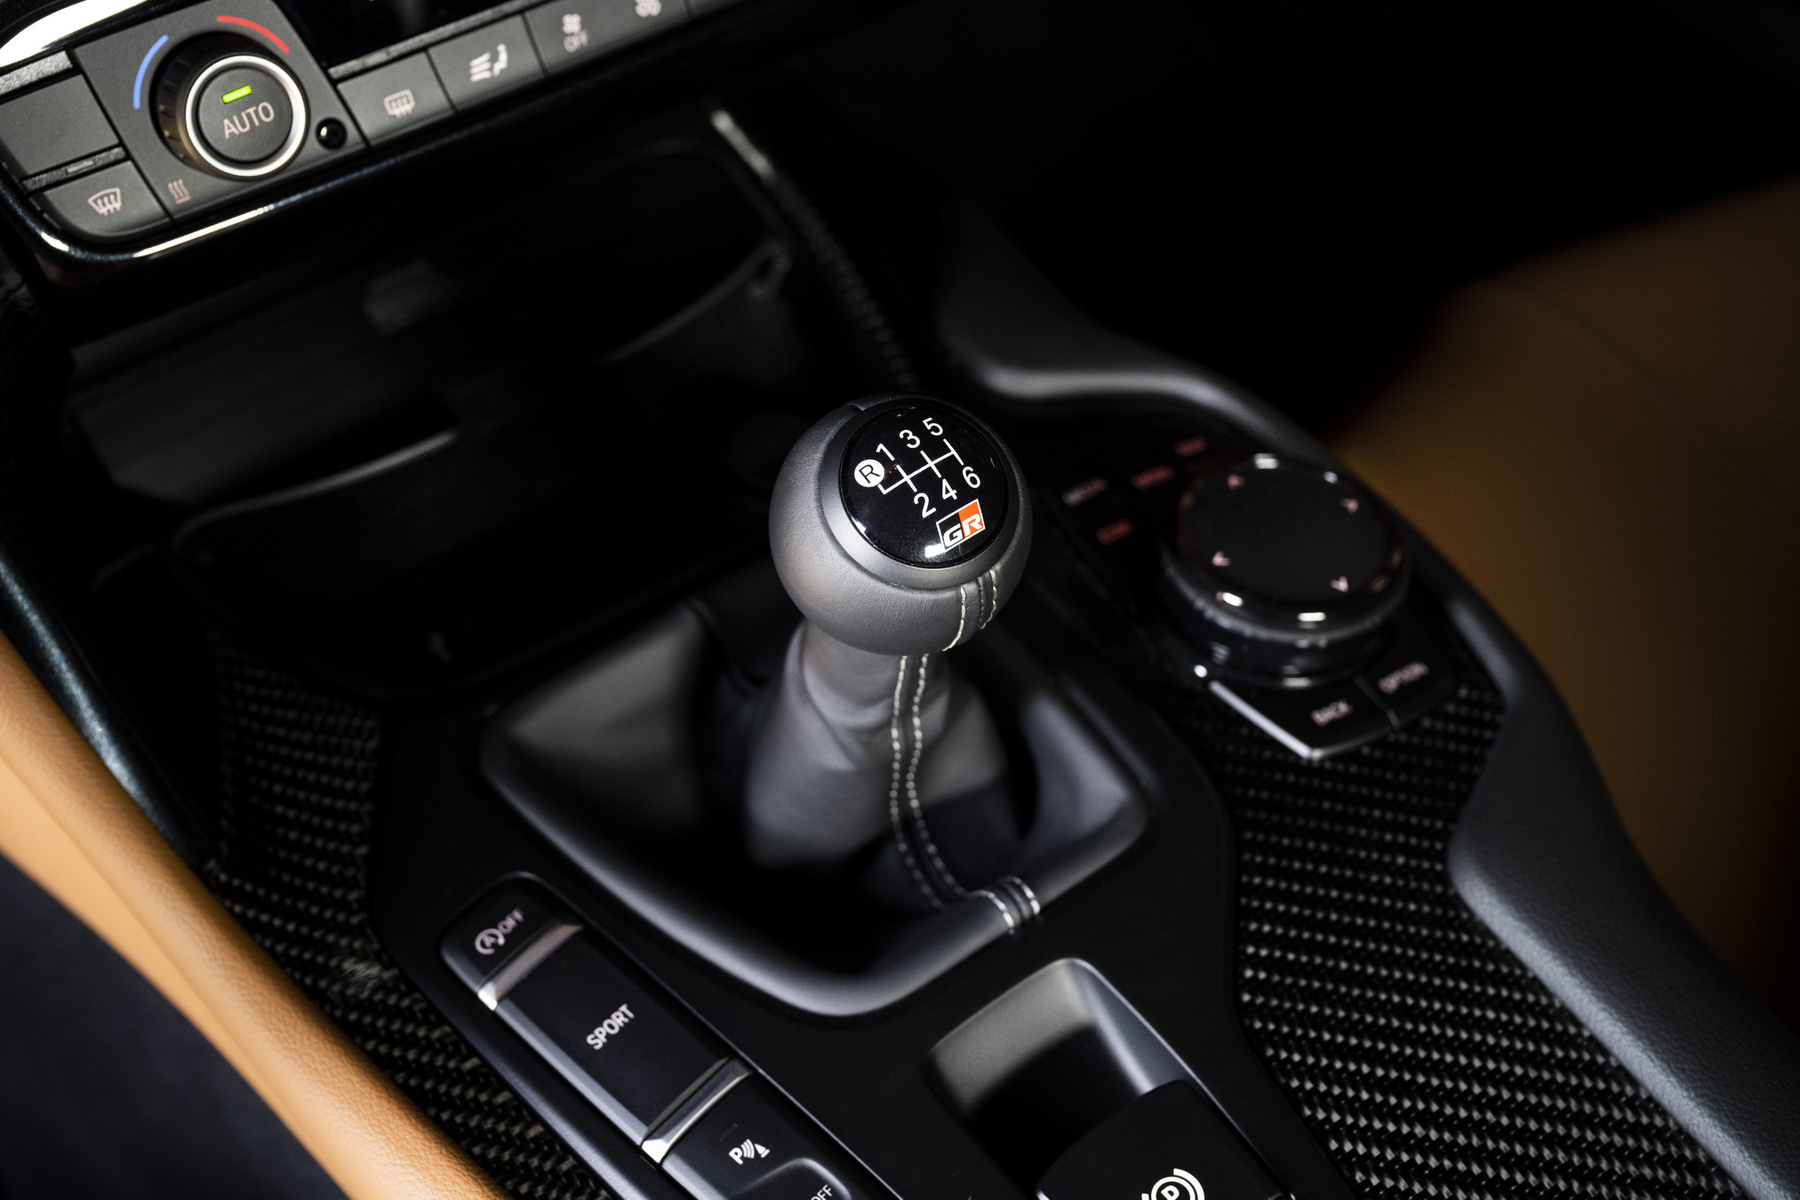 A Lexus új, elektromos szuper-sportautójának végleges kivitelében minden, a kormányzás, a sebességváltás és a fékezés is elektromos, illetve szimulált lesz